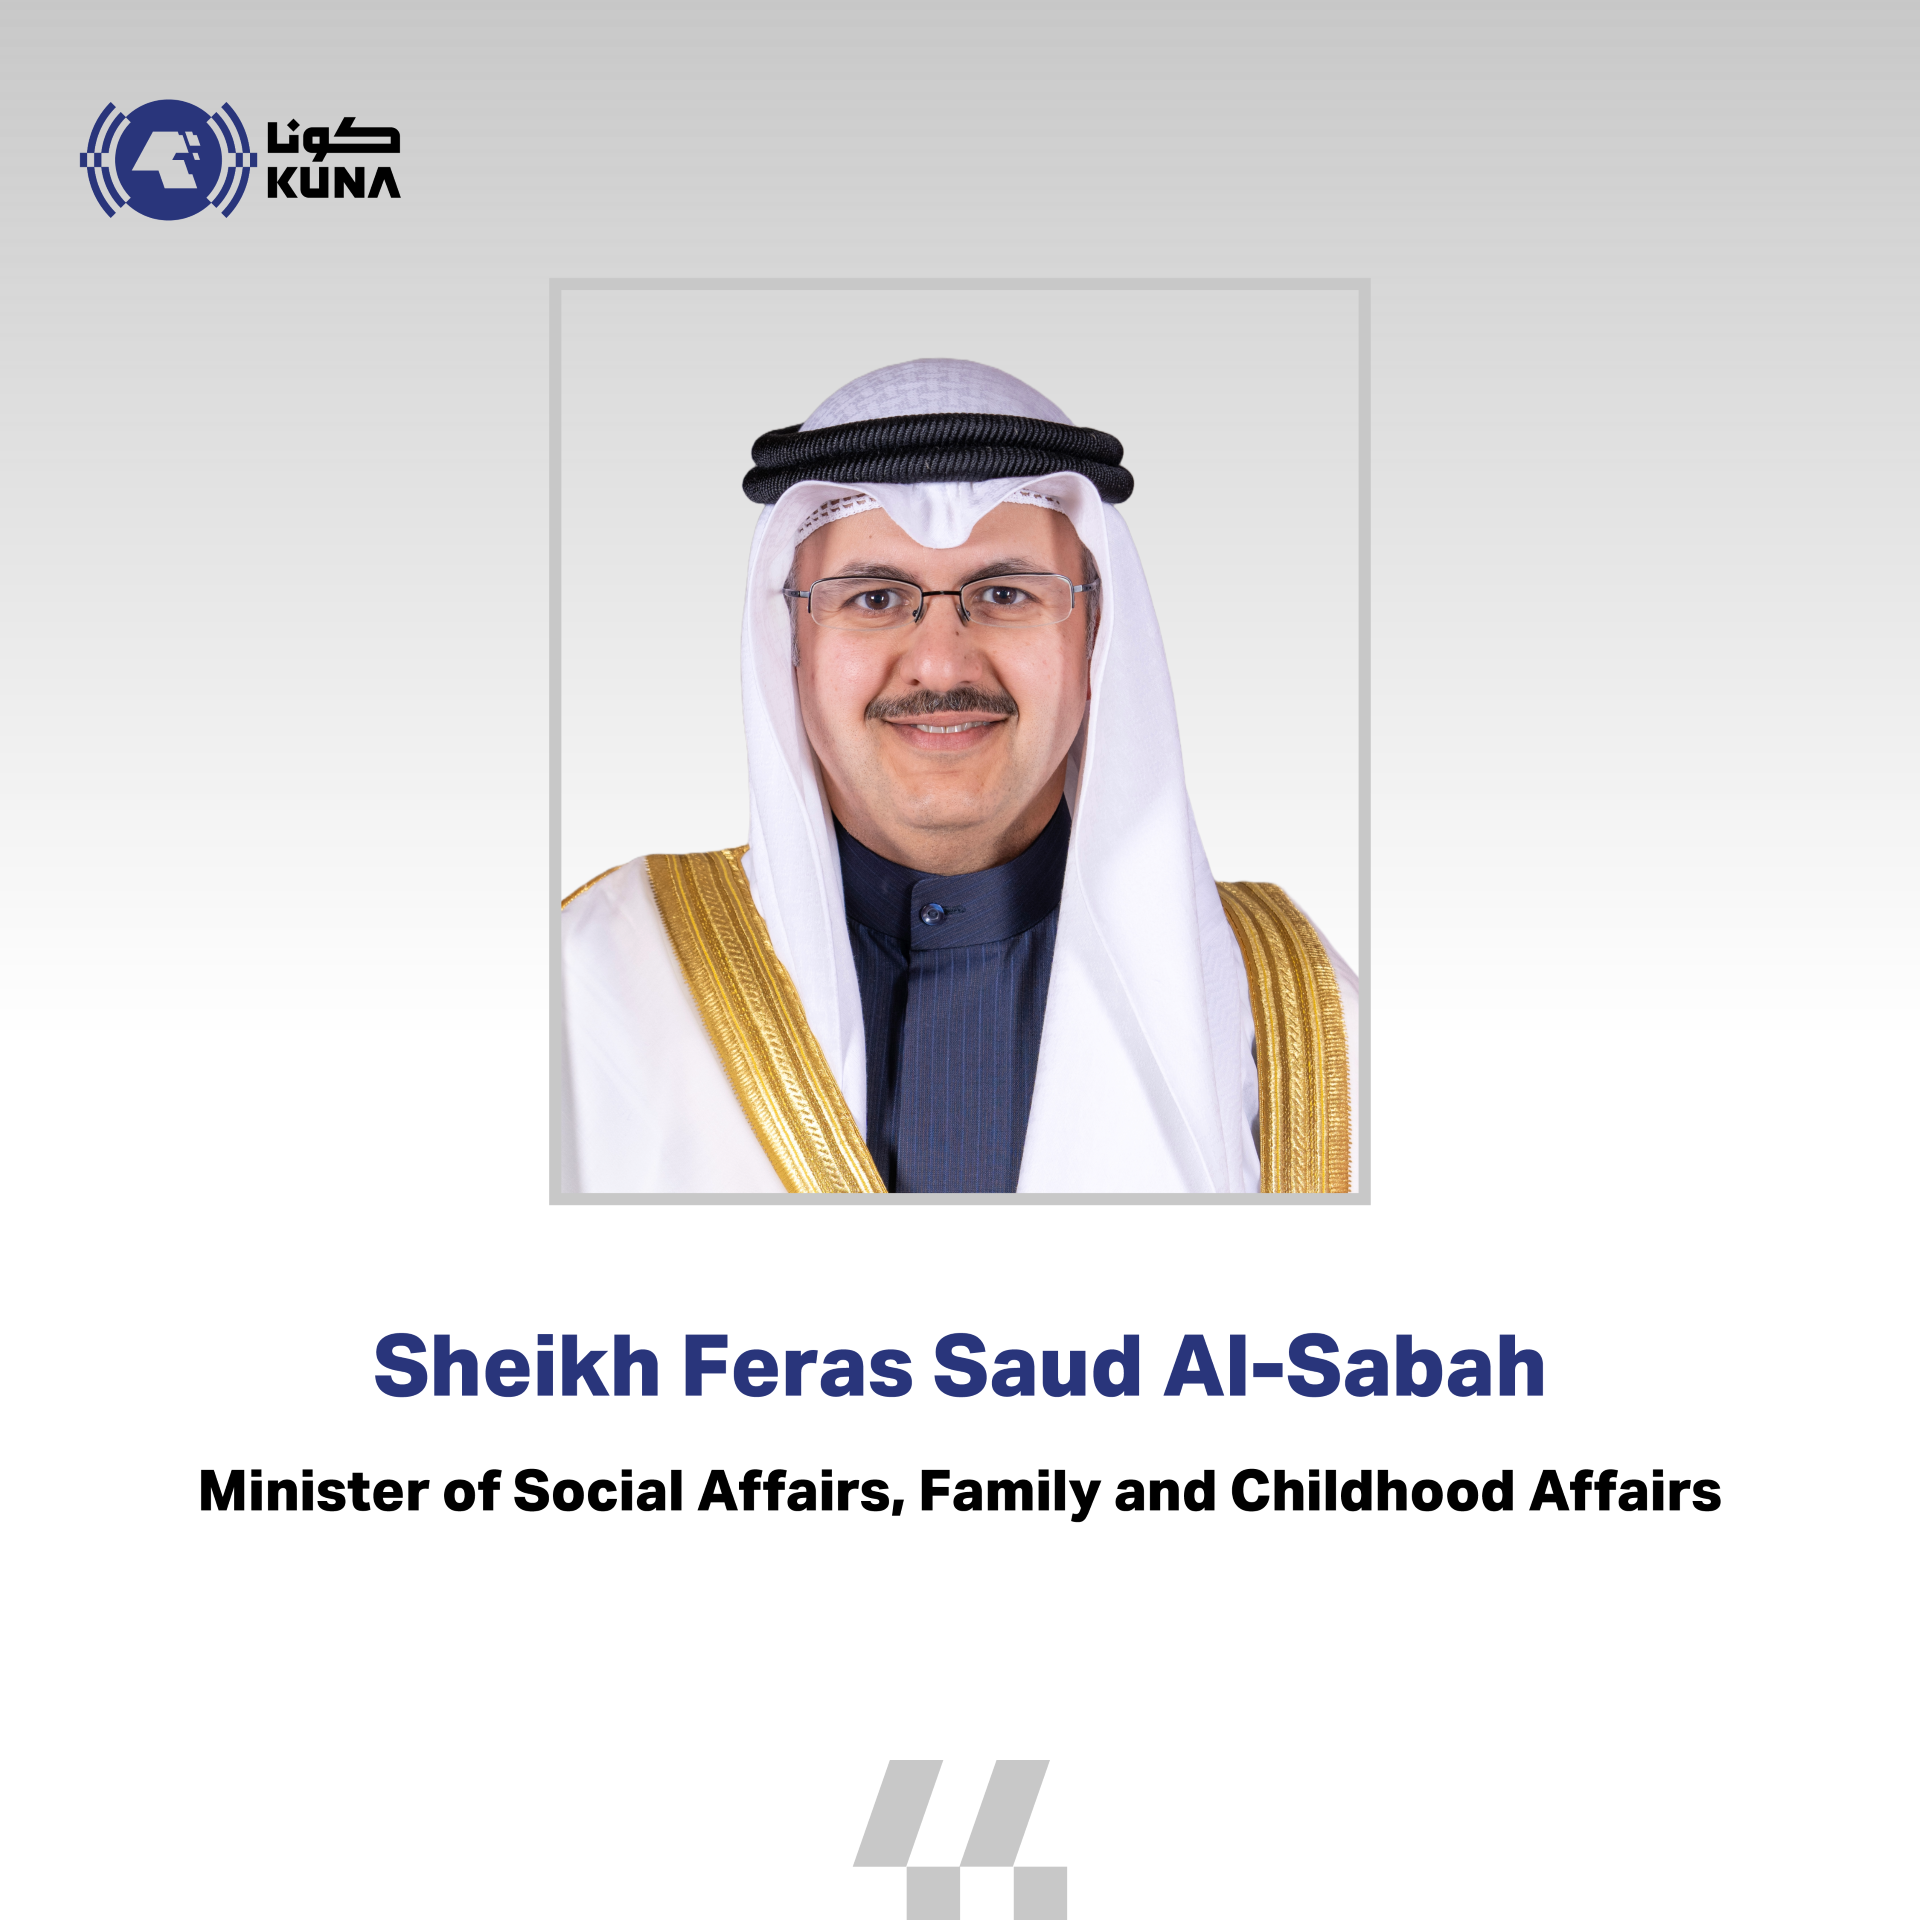 Minister of Social Affairs, Family and Children Affairs Sheikh Feras Saud Al-Sabah